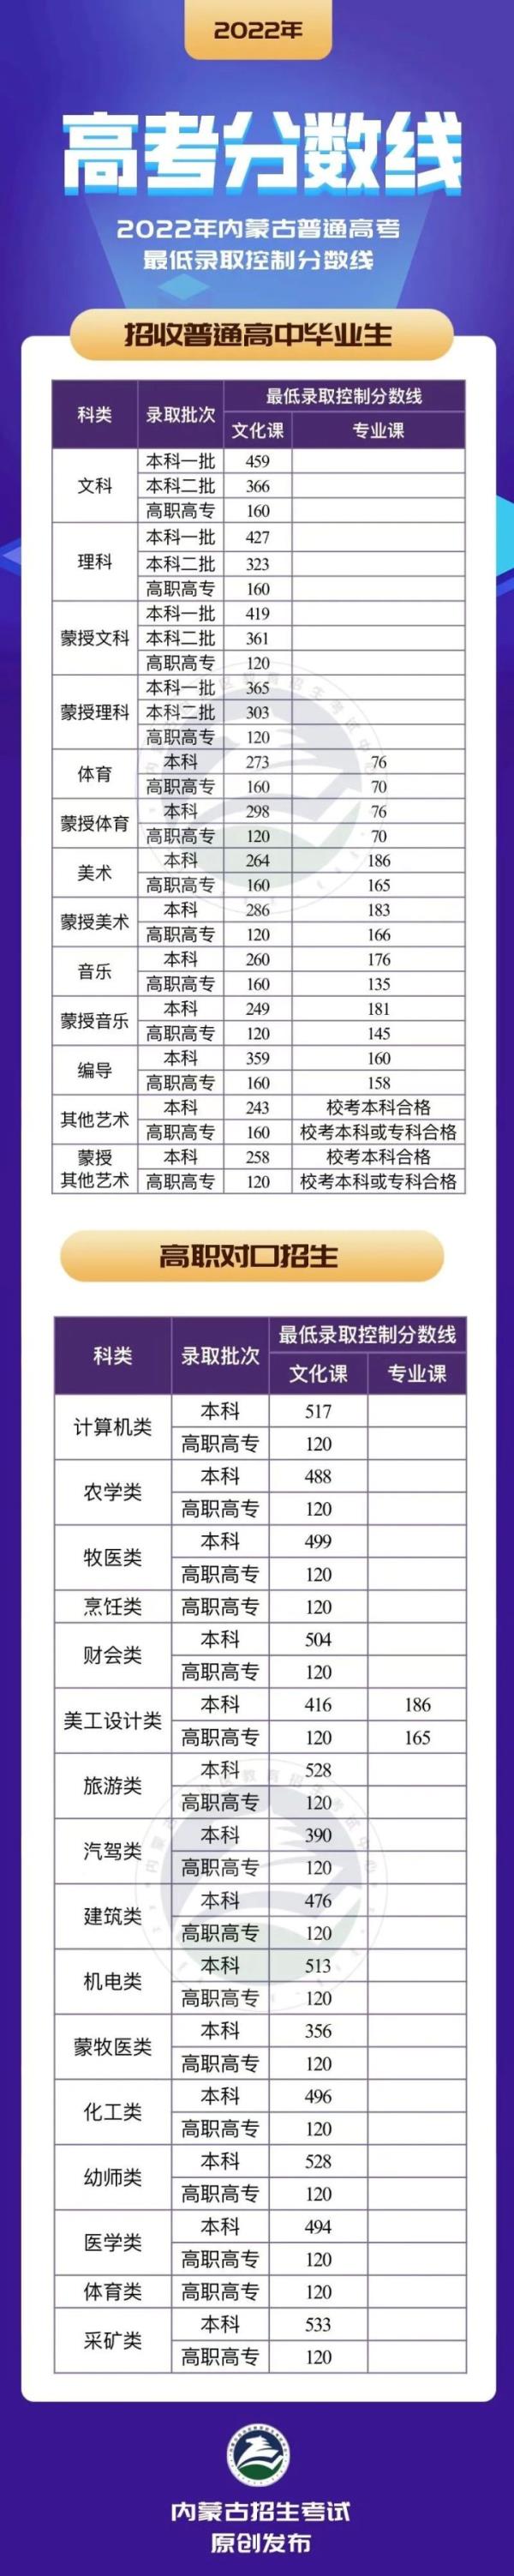 黑龙江2020年成考录取分数线_2020年黑龙江省成考录取分数线